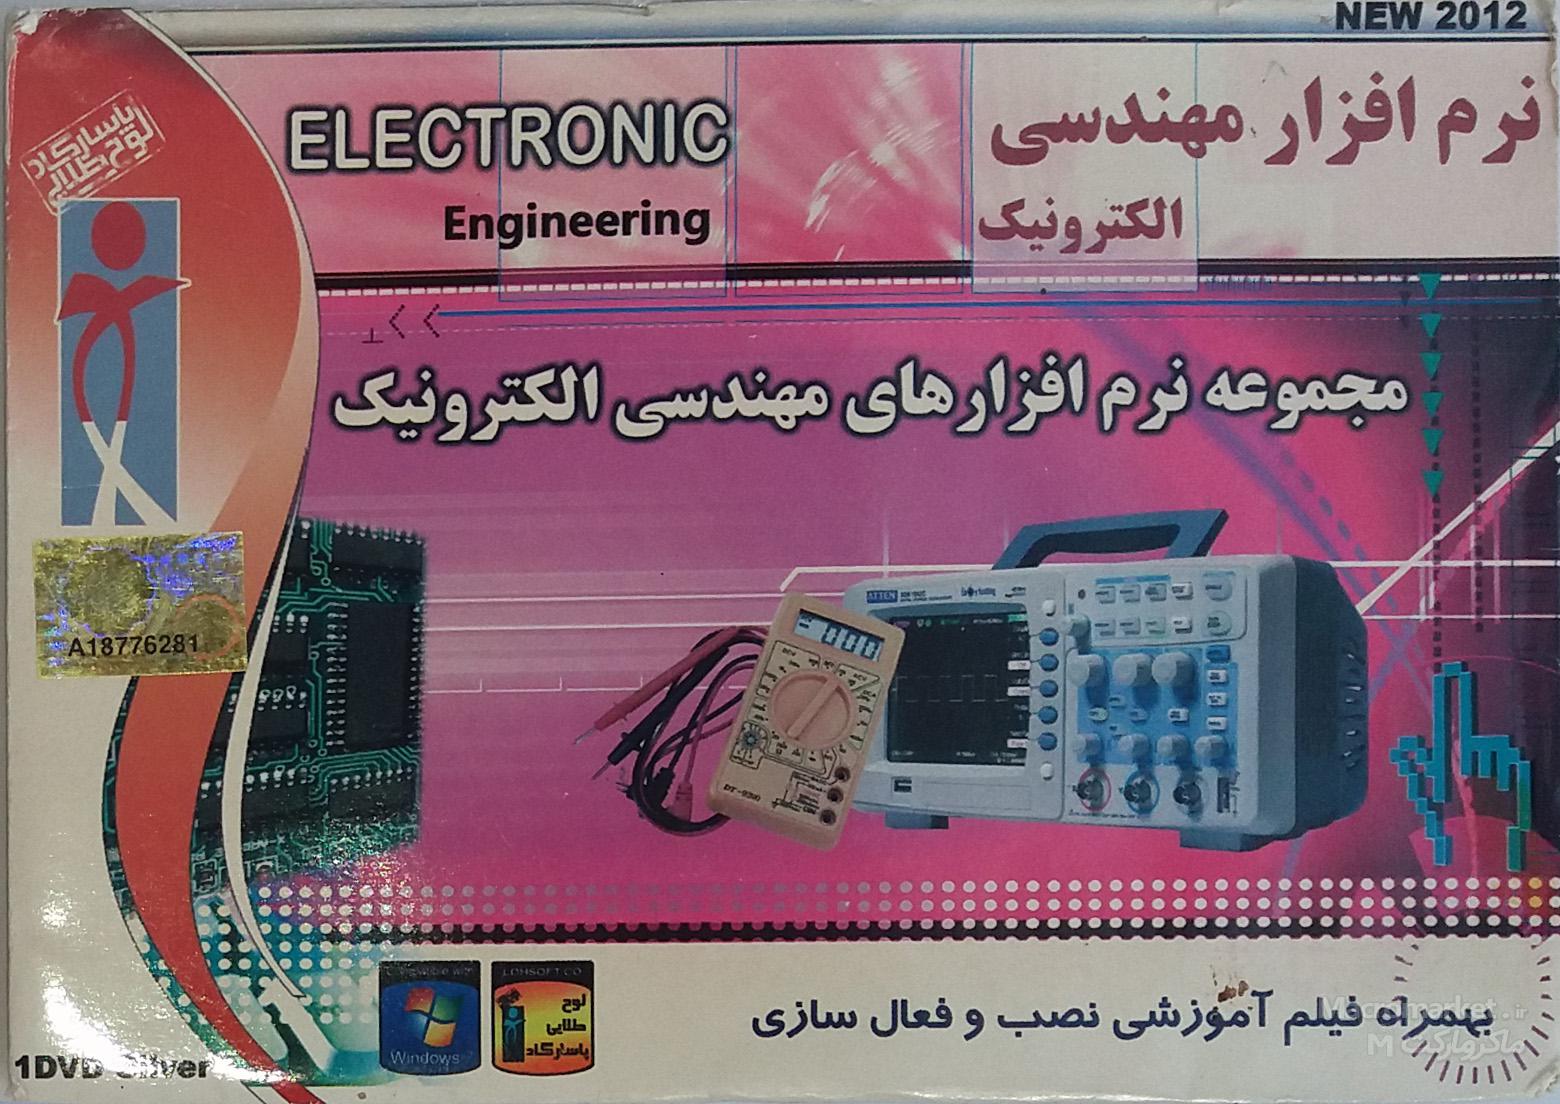 مجموعه نرم افزار های مهندسی الکترونیک در یک DVD - قیمت و خرید برنامه های ELECTRONIC Enginering بهمراه آموزش نصب و پشتیبانی